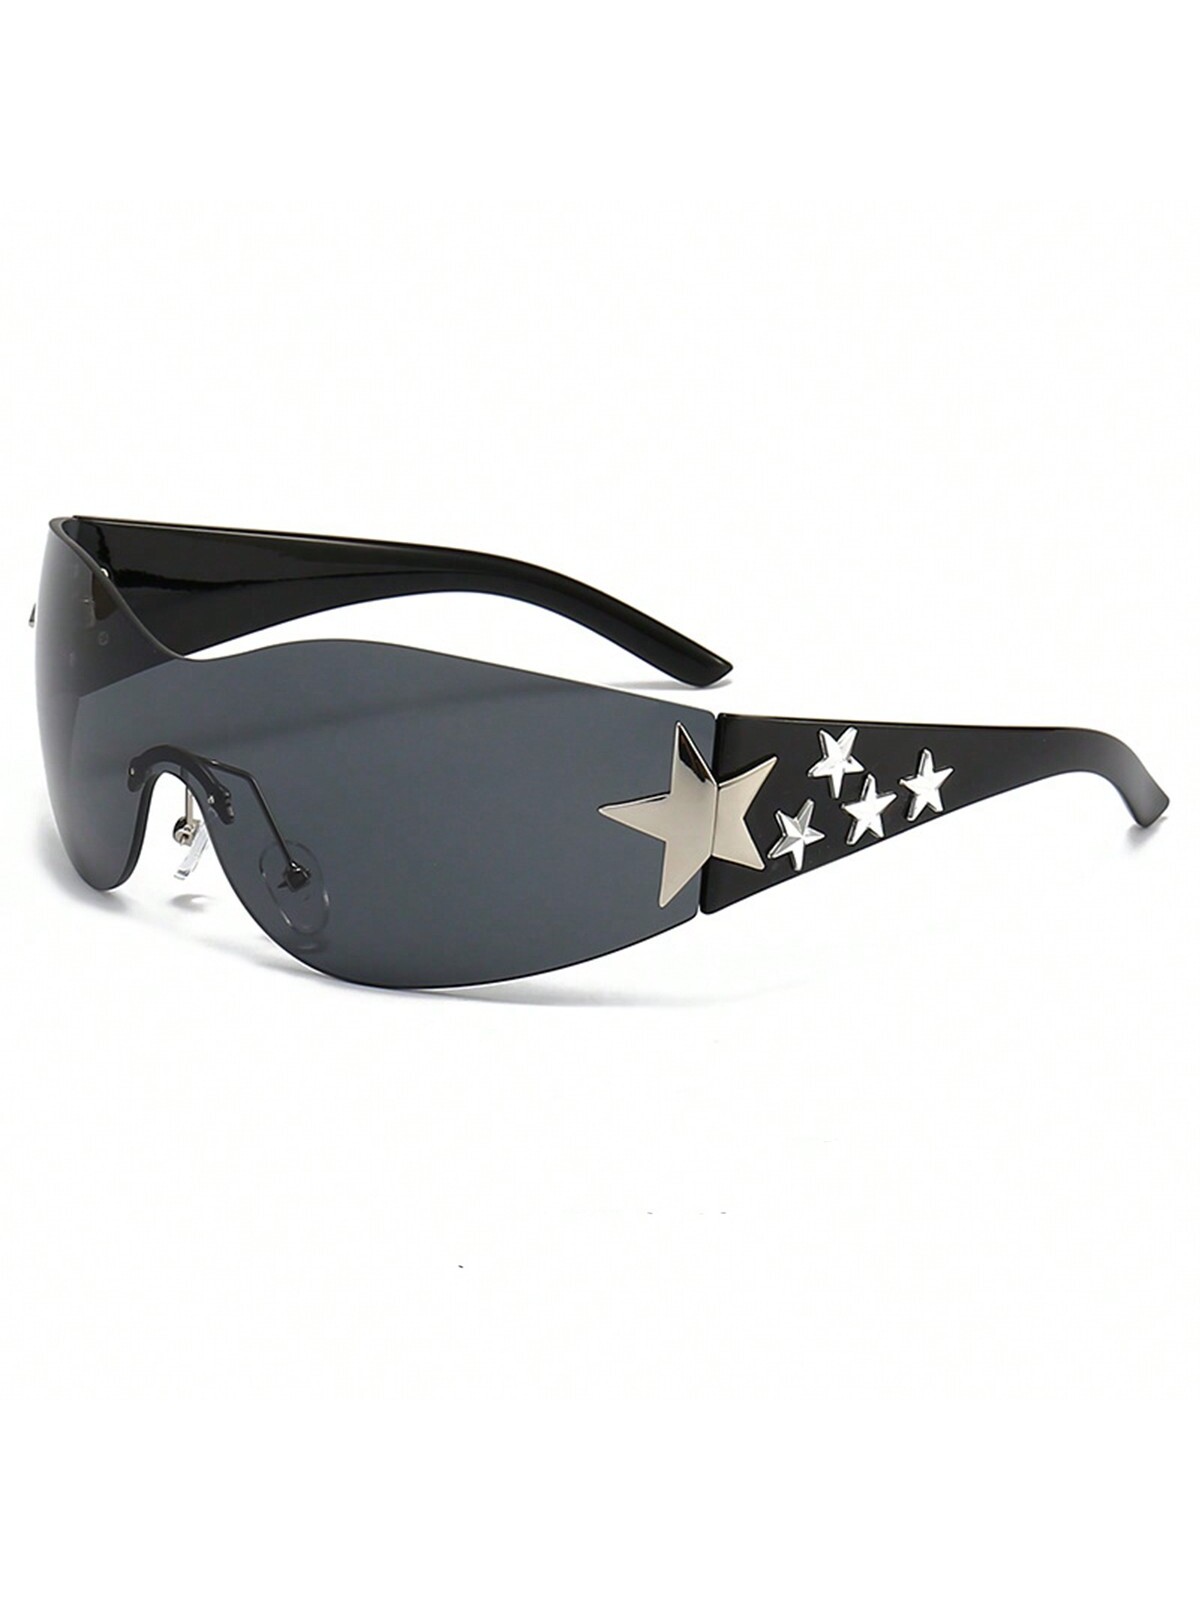 1шт унисекс многоцветные солнцезащитные очки со звездами UV400